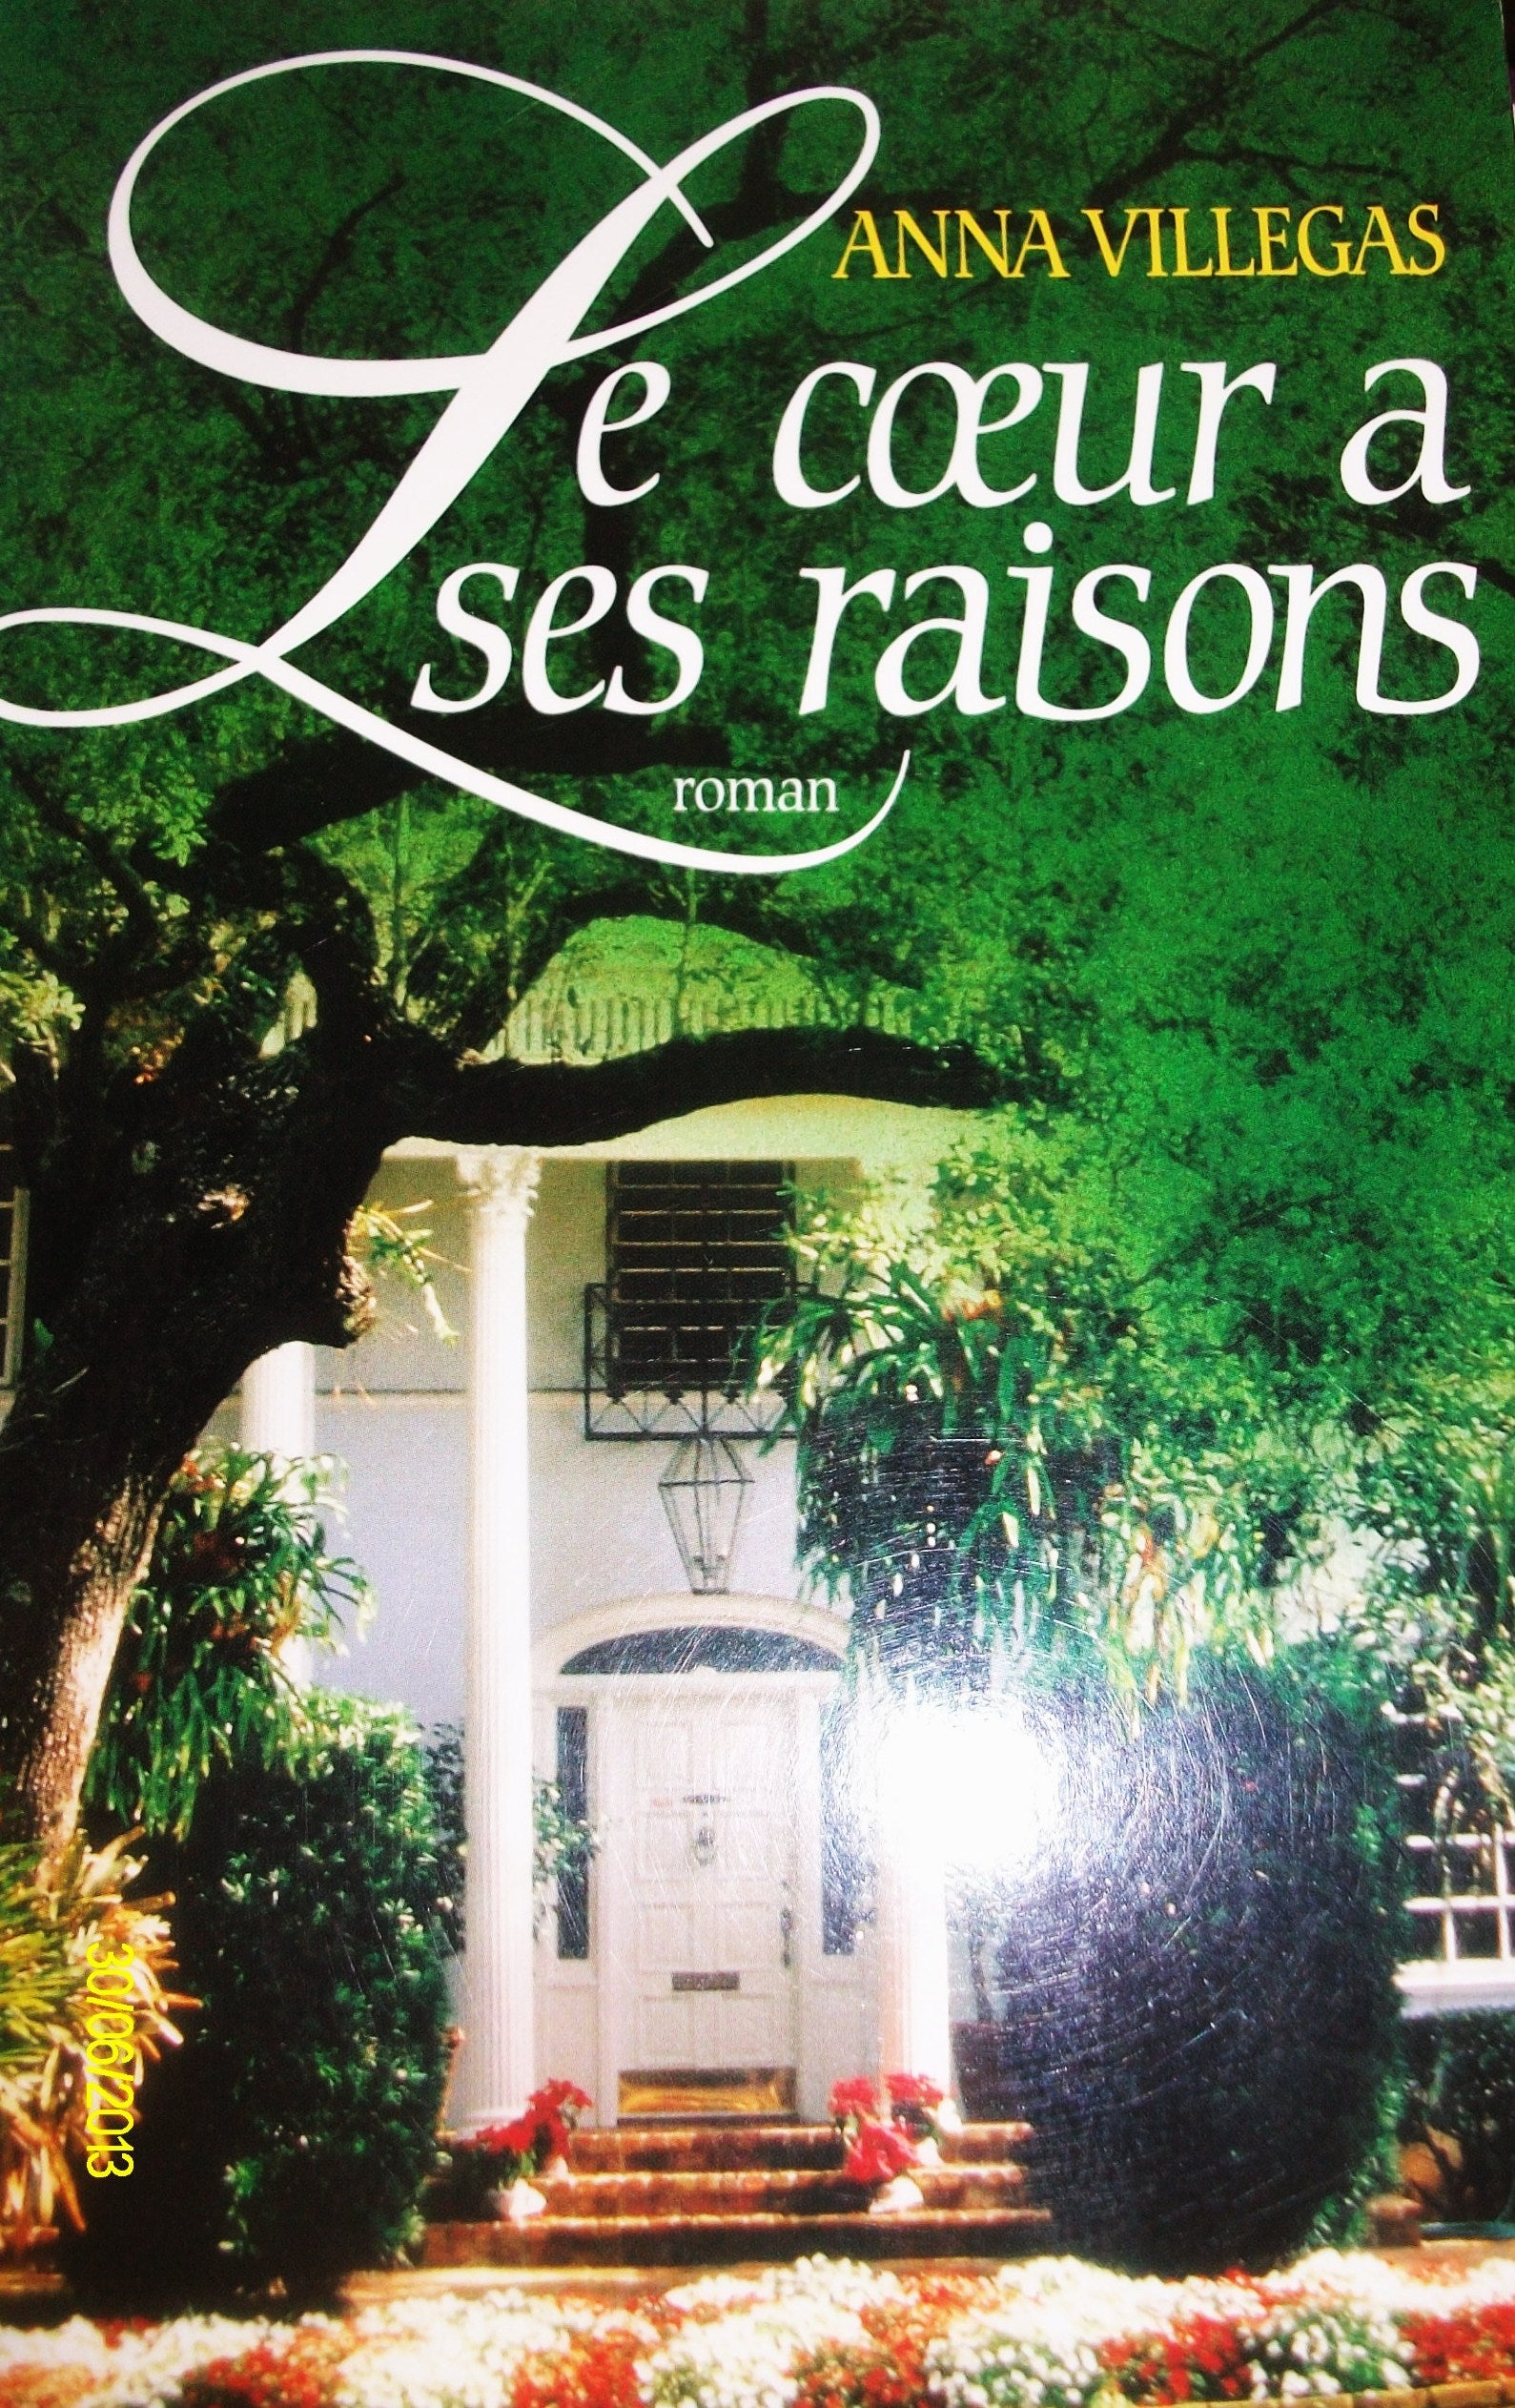 Livre ISBN 2841142590 Le coeur a ses raisons (Anna Villegas)